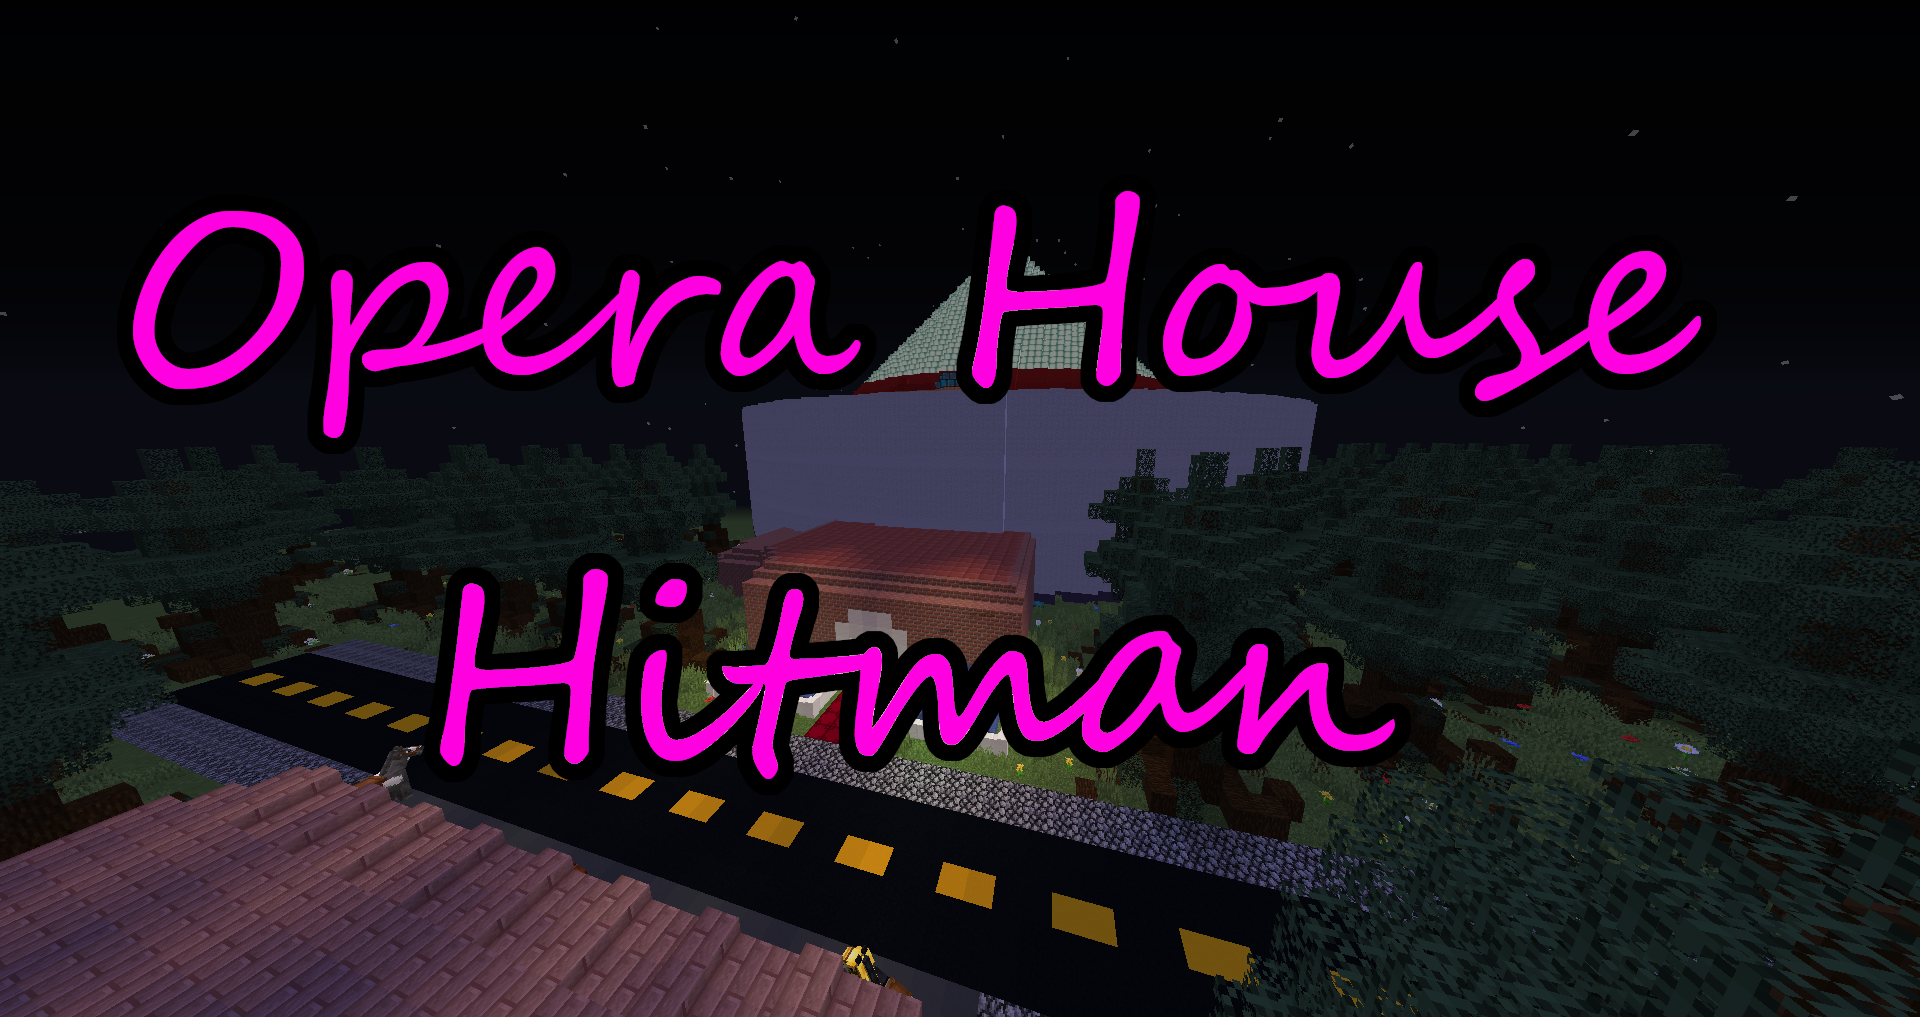 Скачать Opera House Hitman для Minecraft 1.16.3